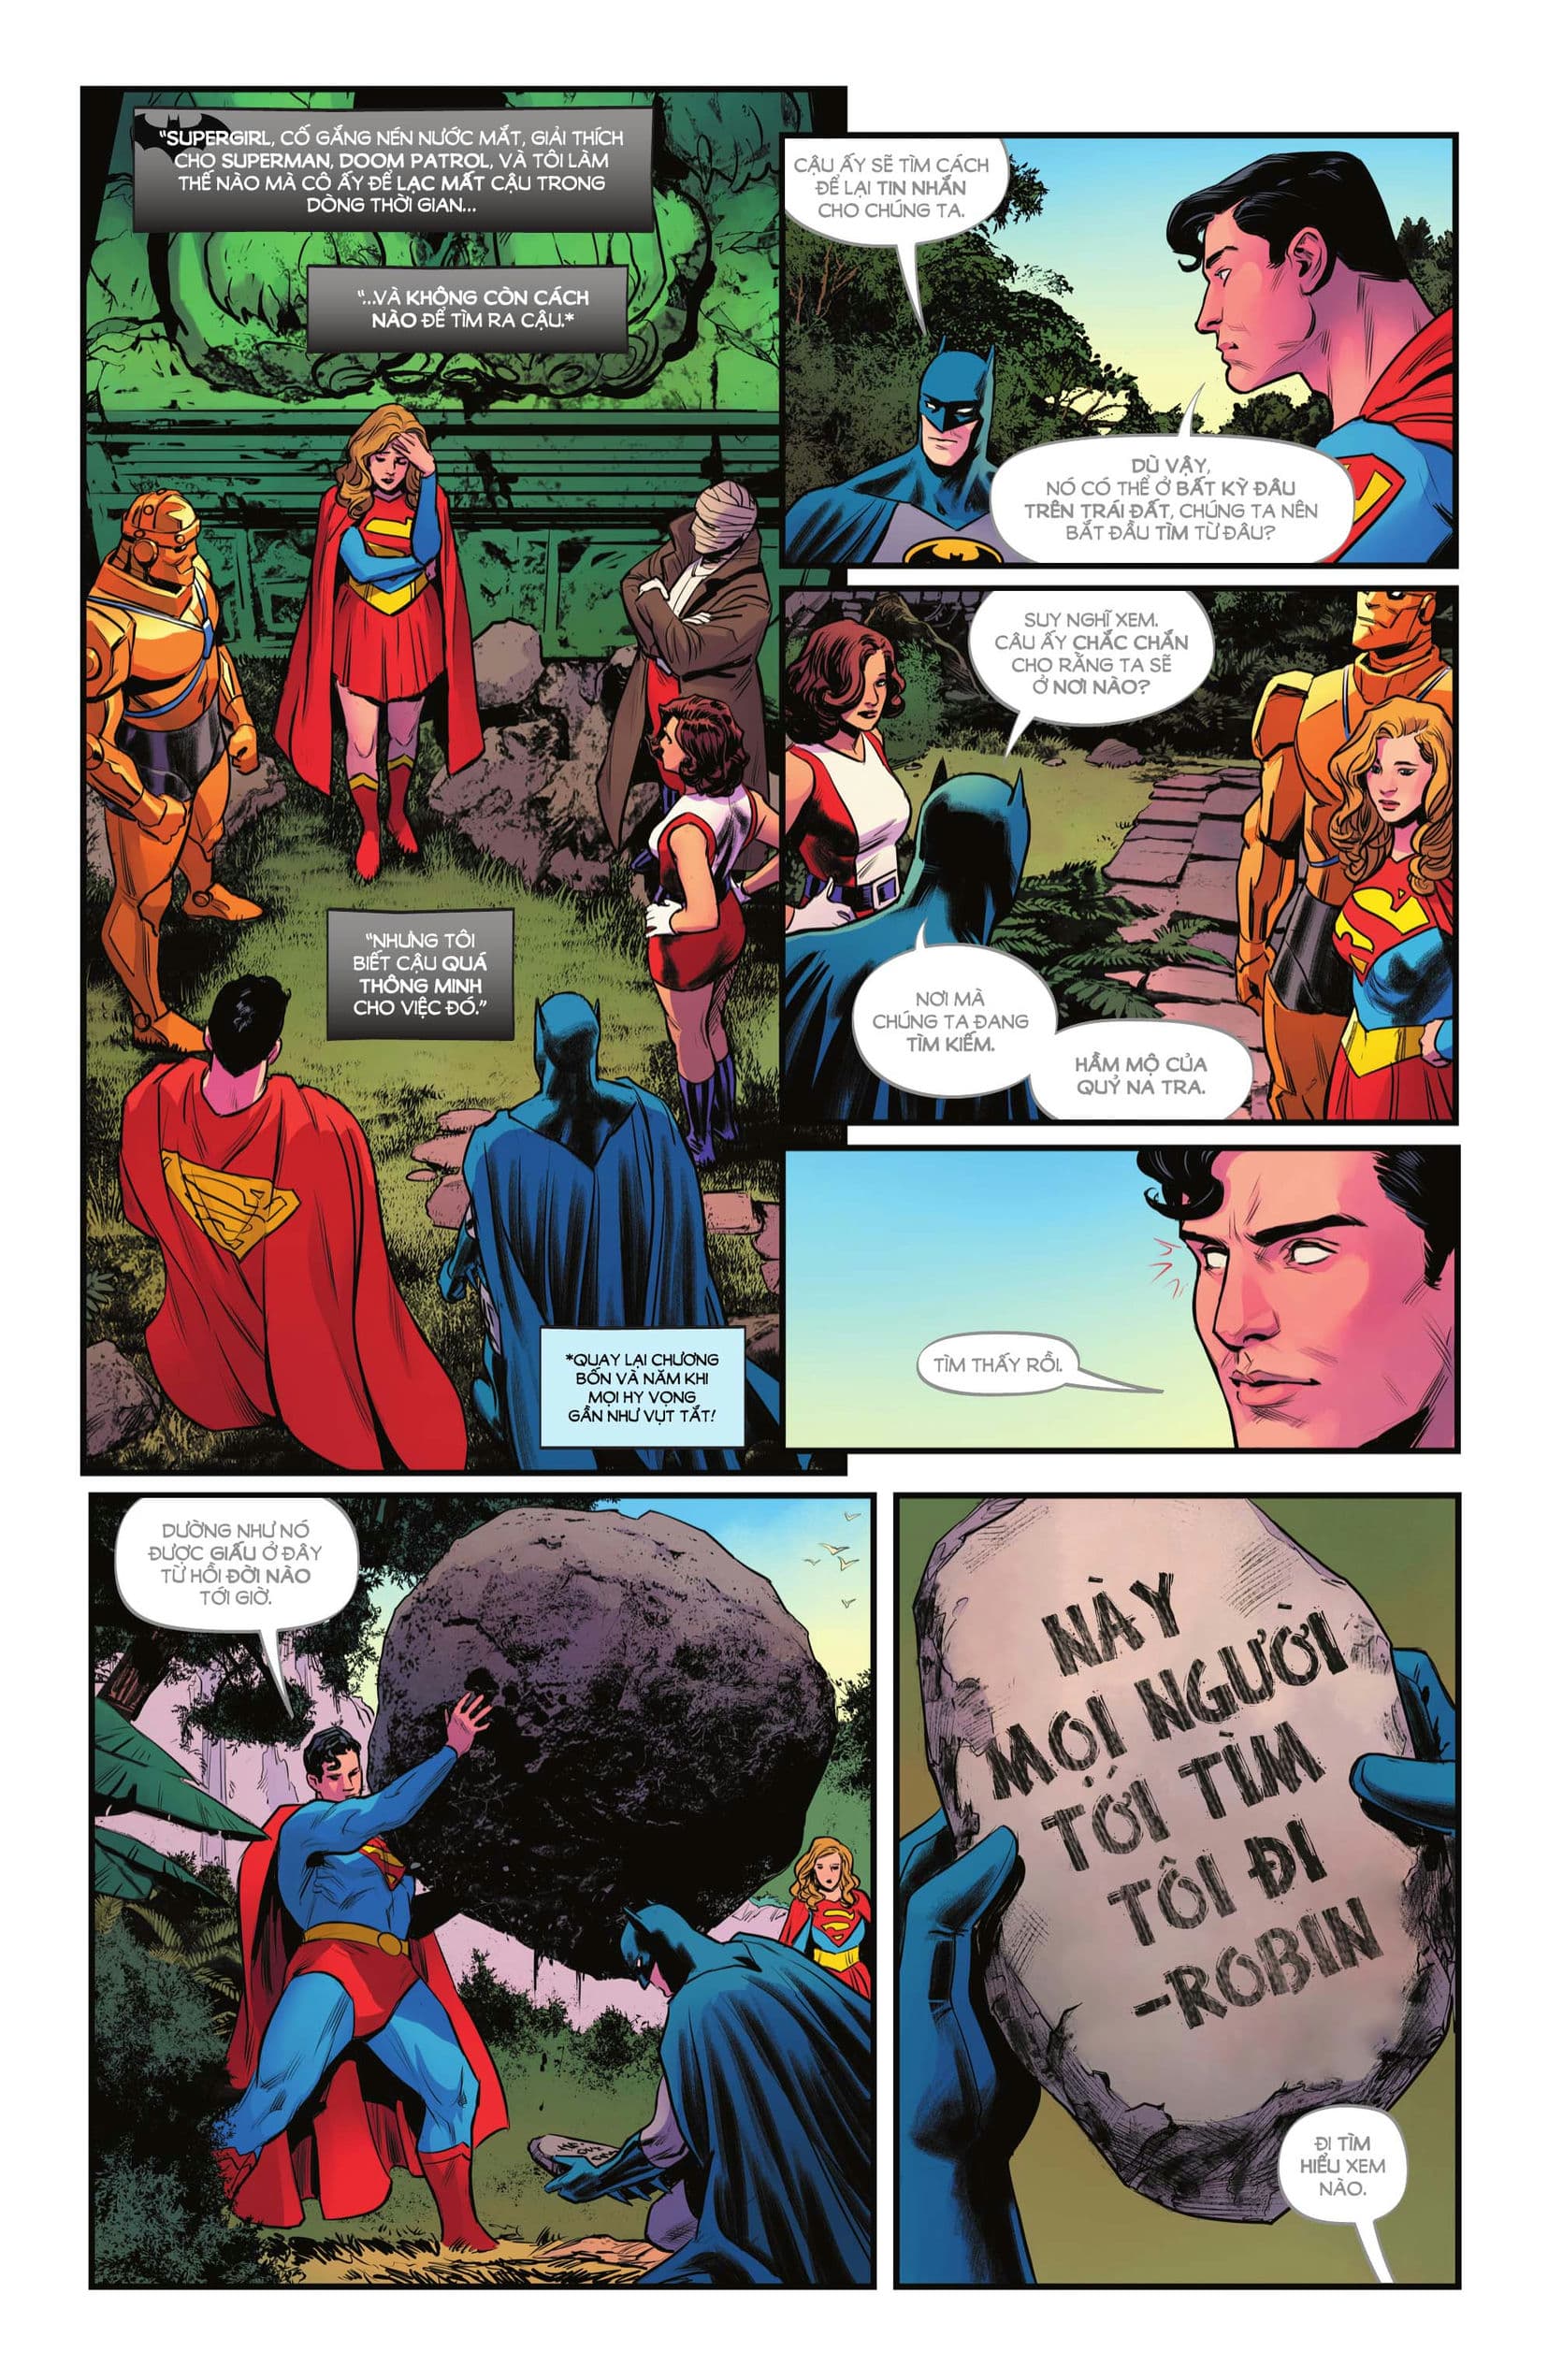 https://langgeek.net/wp-content/webpc-passthru.php?src=https://langgeek.net/wp-content/uploads/2023/02/Batman-Superman-Worlds-Finest-2022-006-011.jpg&nocache=1